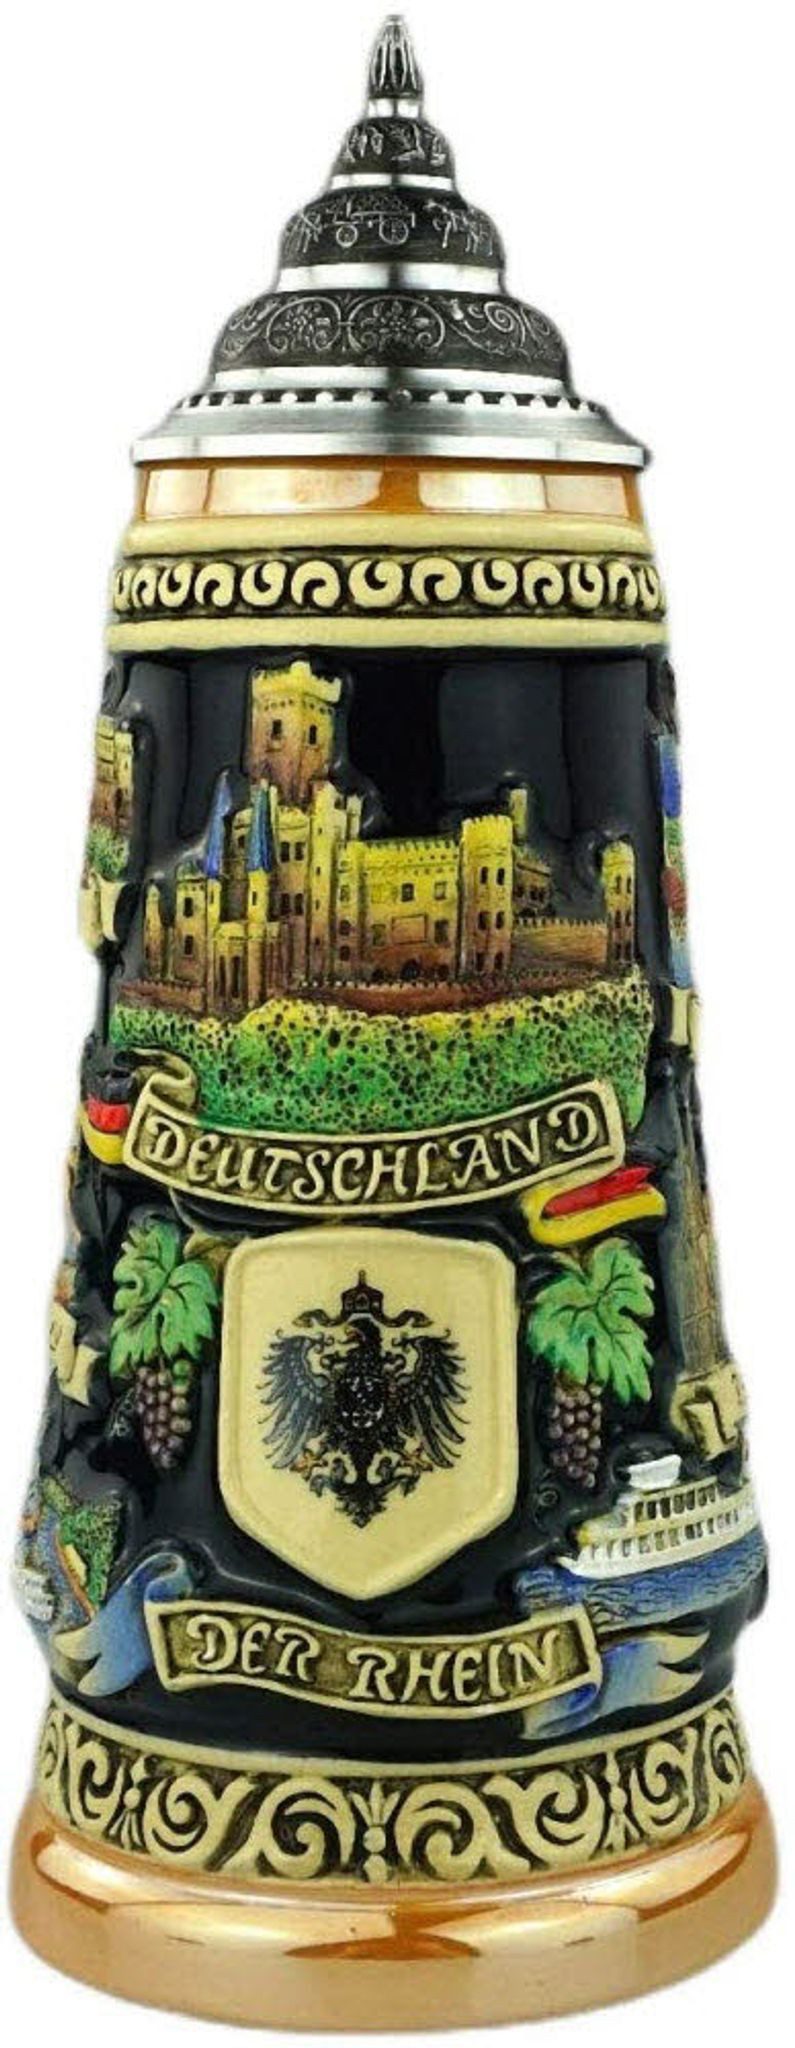 KING Bierkrug Deutschland Panorama 0,5 L gelb echt deutsch Bierkrug, ceramic